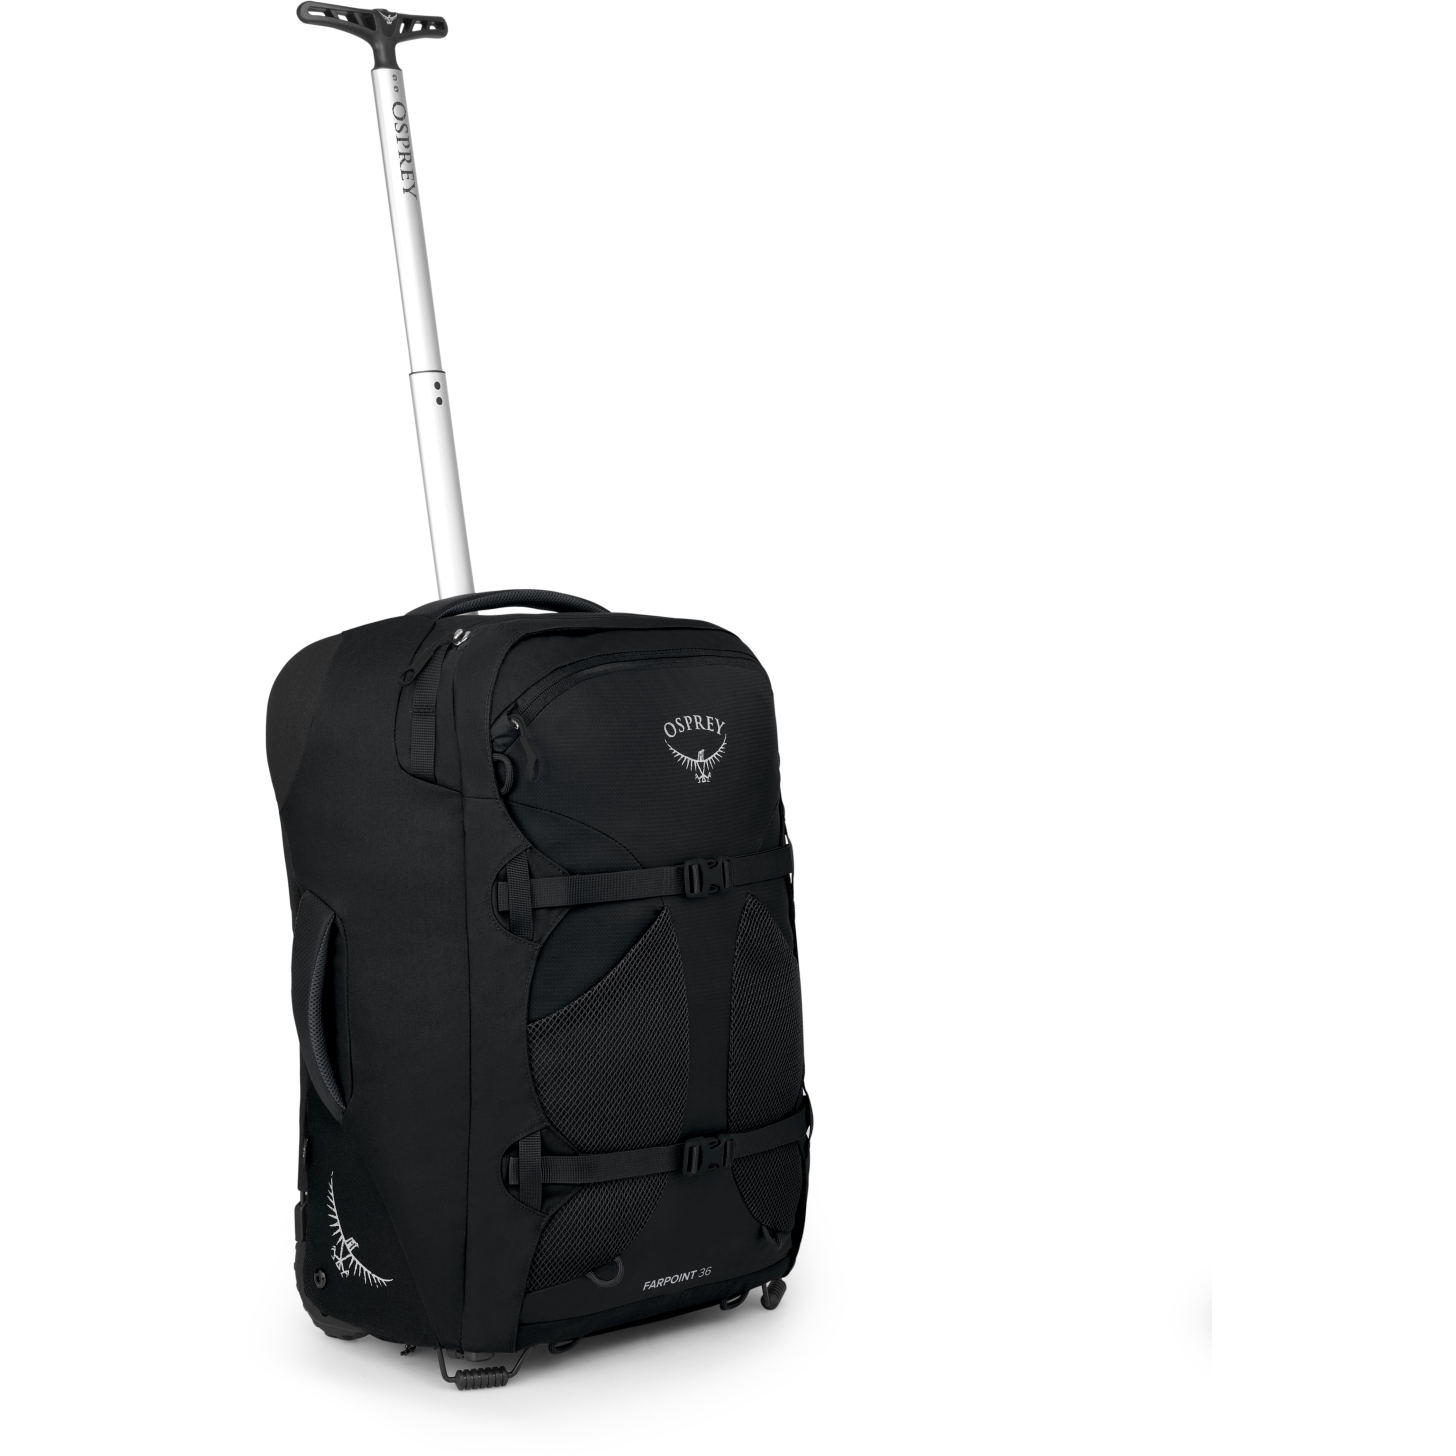 Produktbild von Osprey Farpoint Wheels 36 Reisetasche - Schwarz